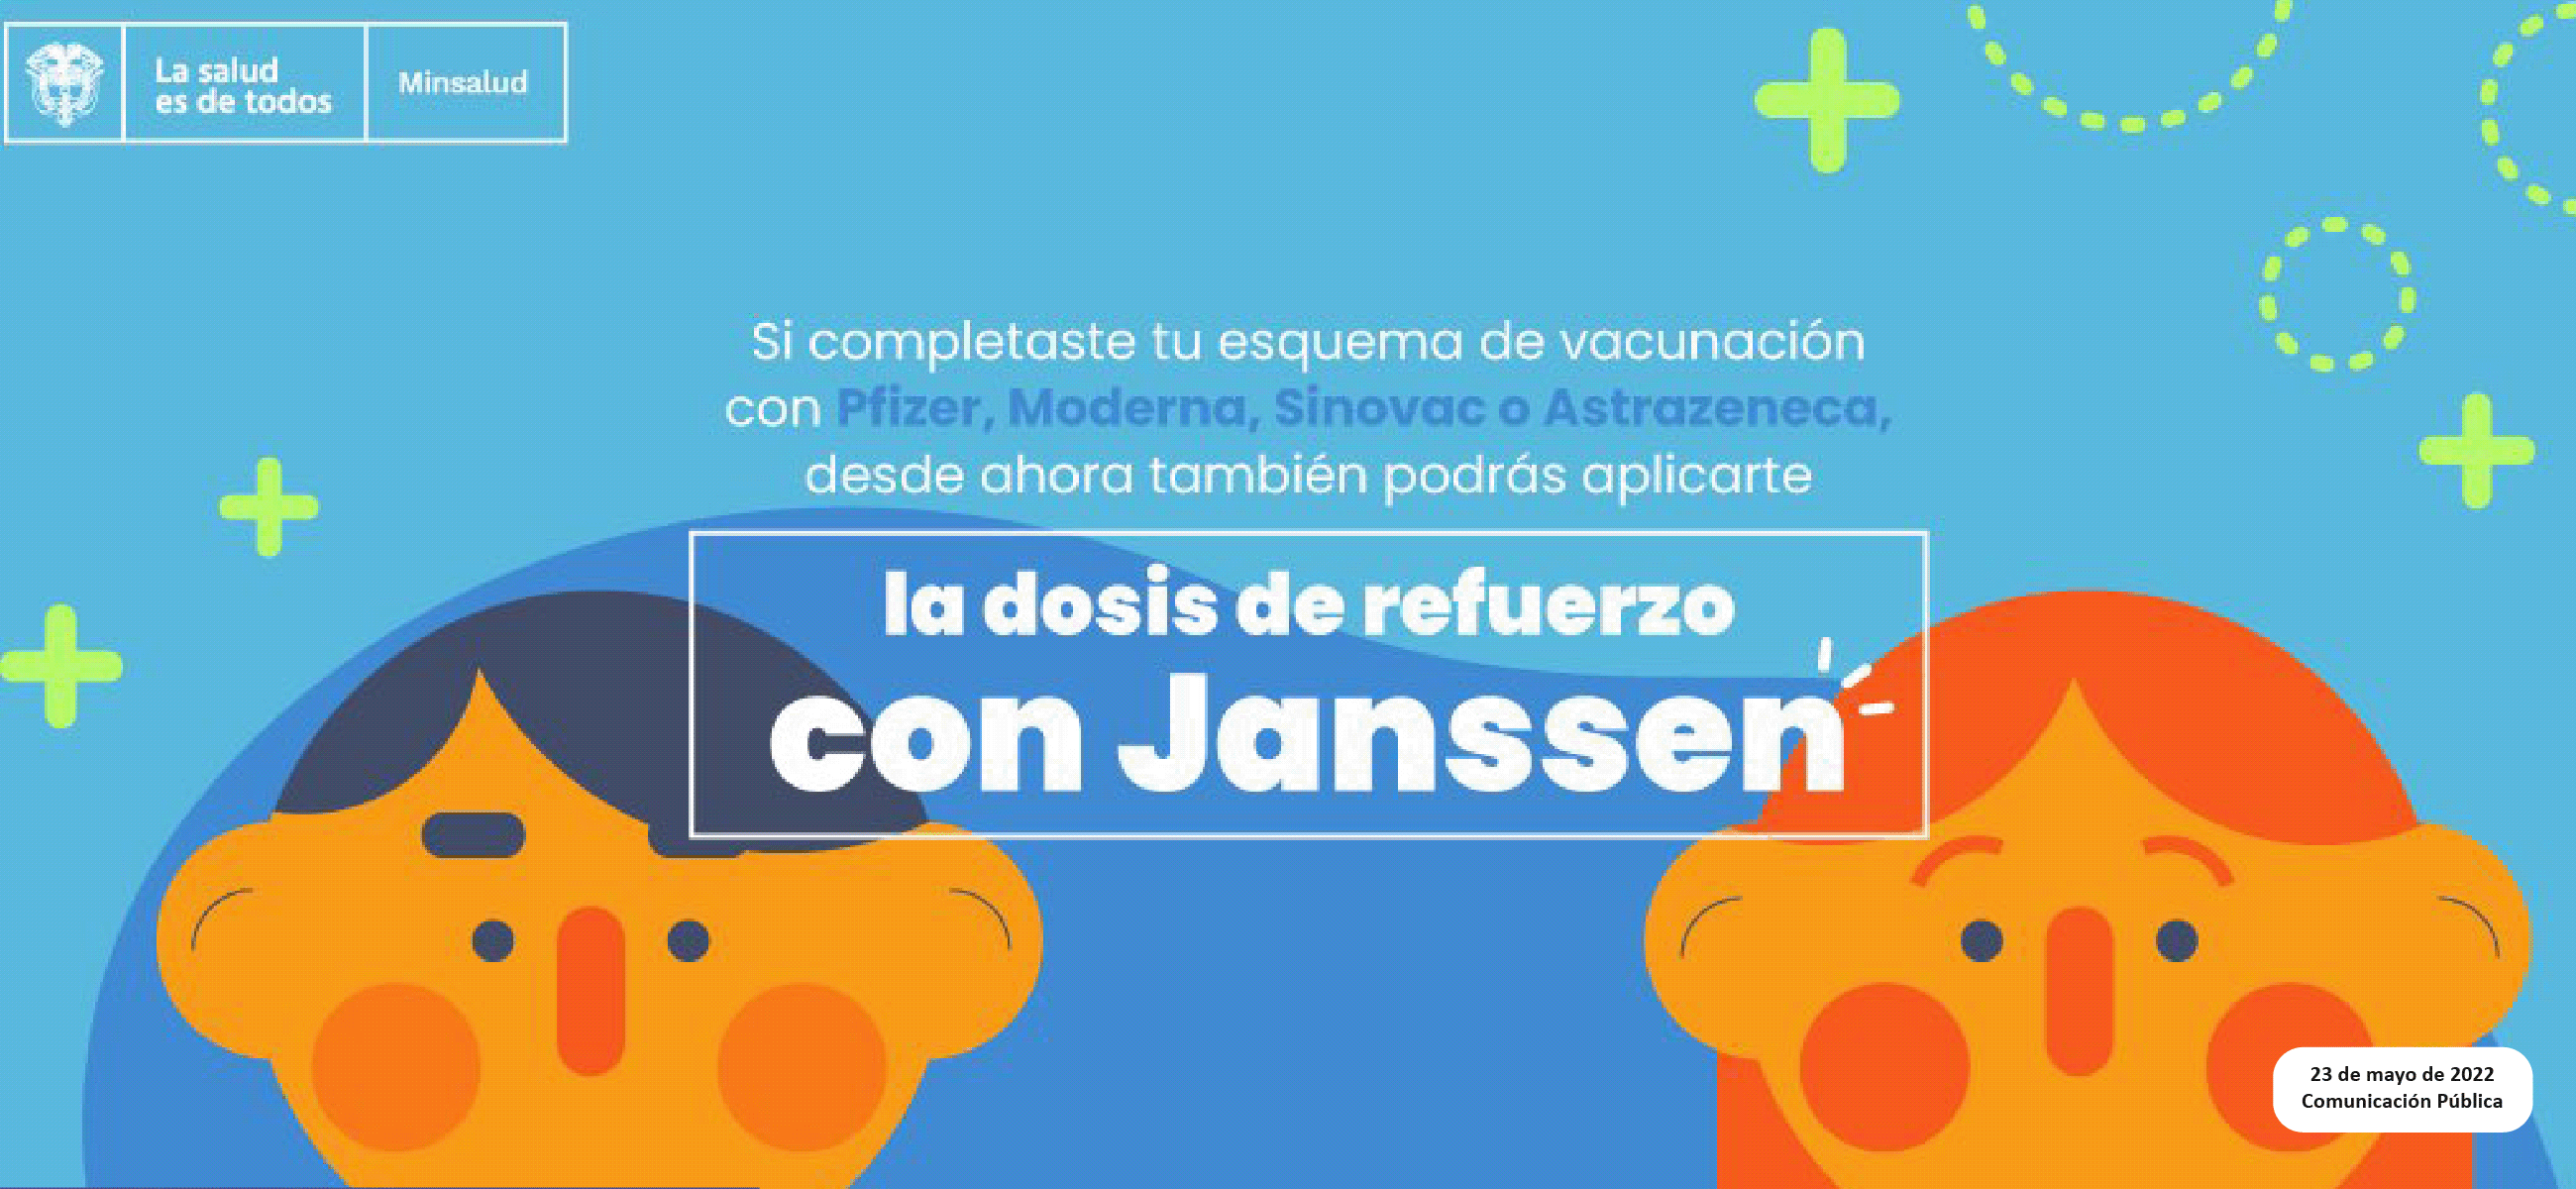 La vacuna Janssen es una alternativa para la dosis de refuerzo